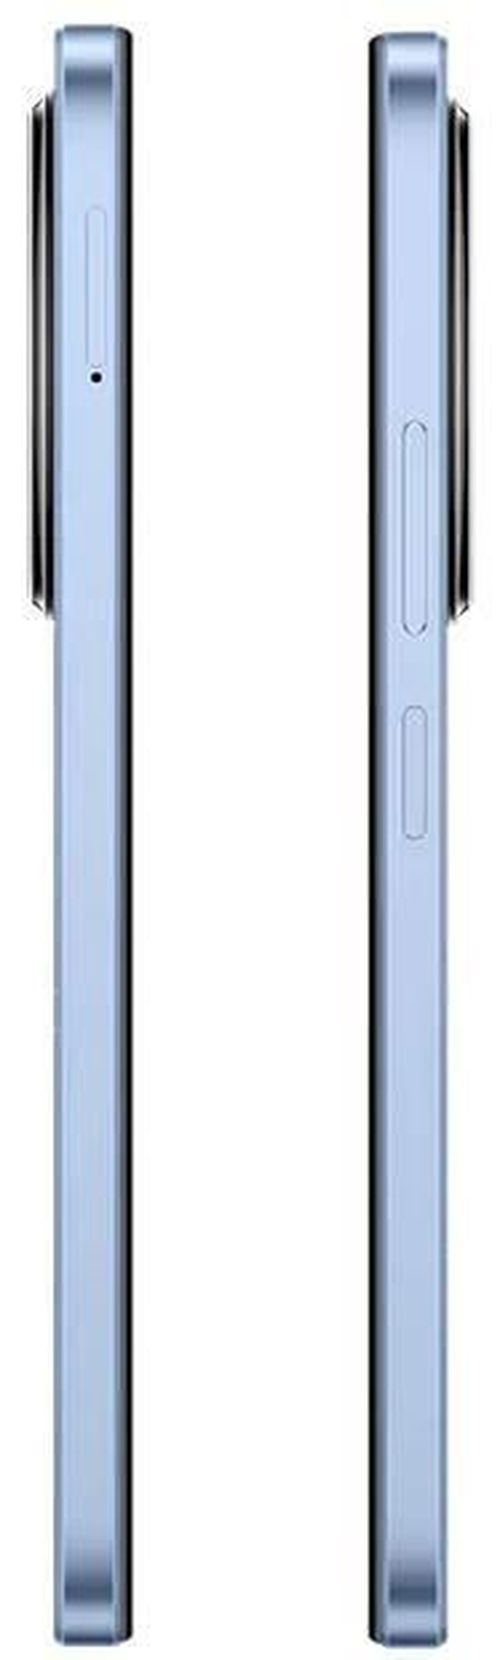 купить Смартфон Xiaomi Redmi A3 3/64GB Blue в Кишинёве 